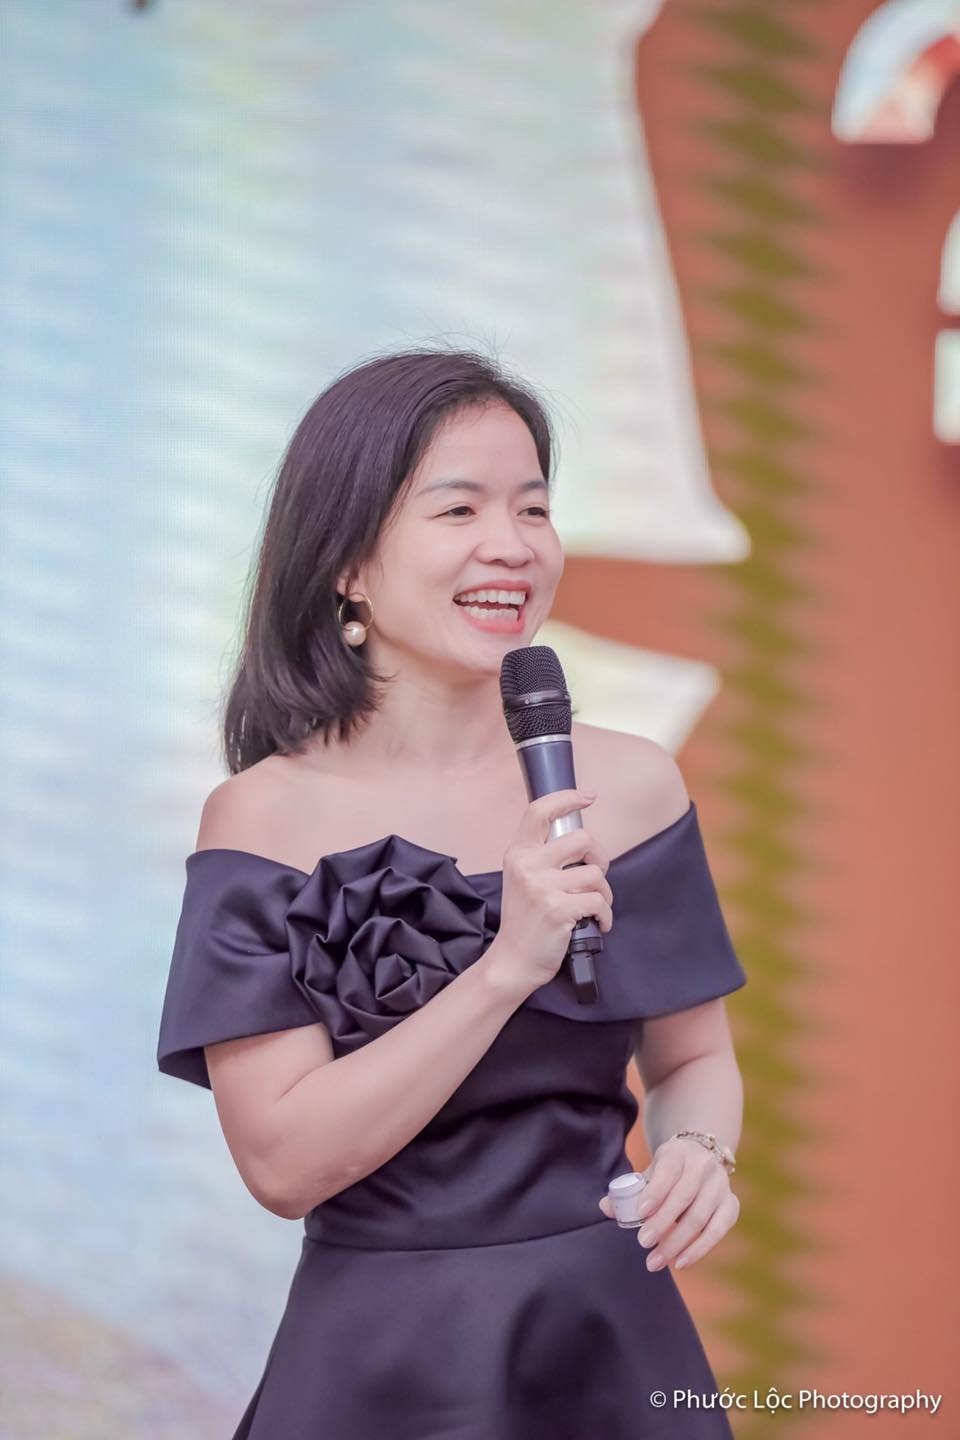 Diễn giả Thảo Phạm: Mẹ là người mang lại nguồn cảm hứng bất tận về đam mê kinh doanh